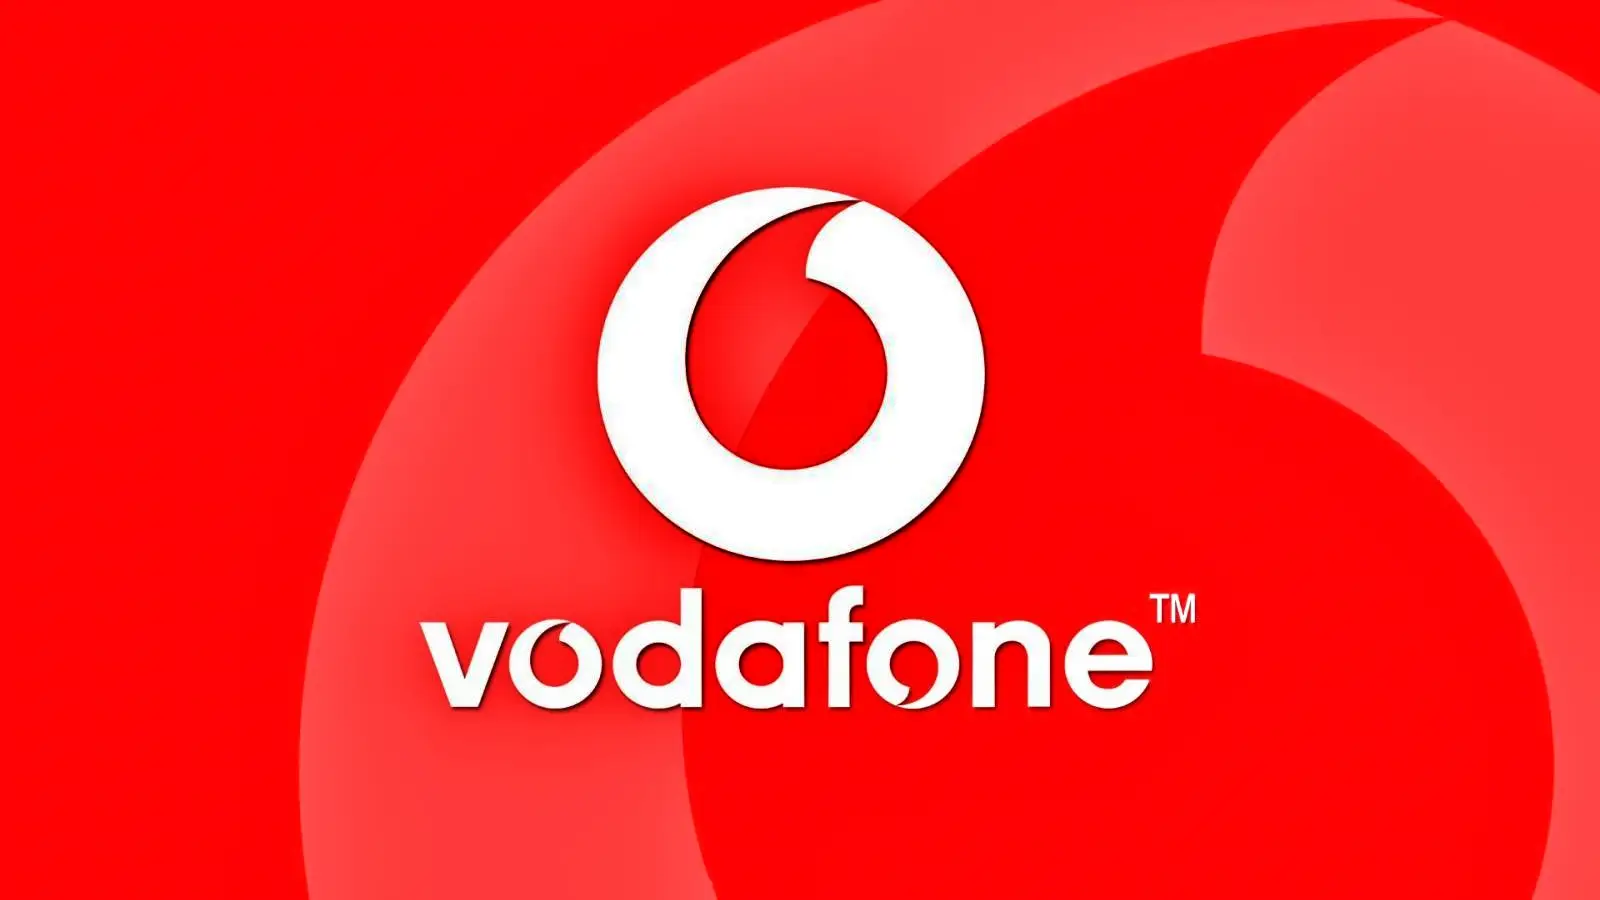 Vodafone Revolut regala 100 LEI GRATIS Debes hacerlo